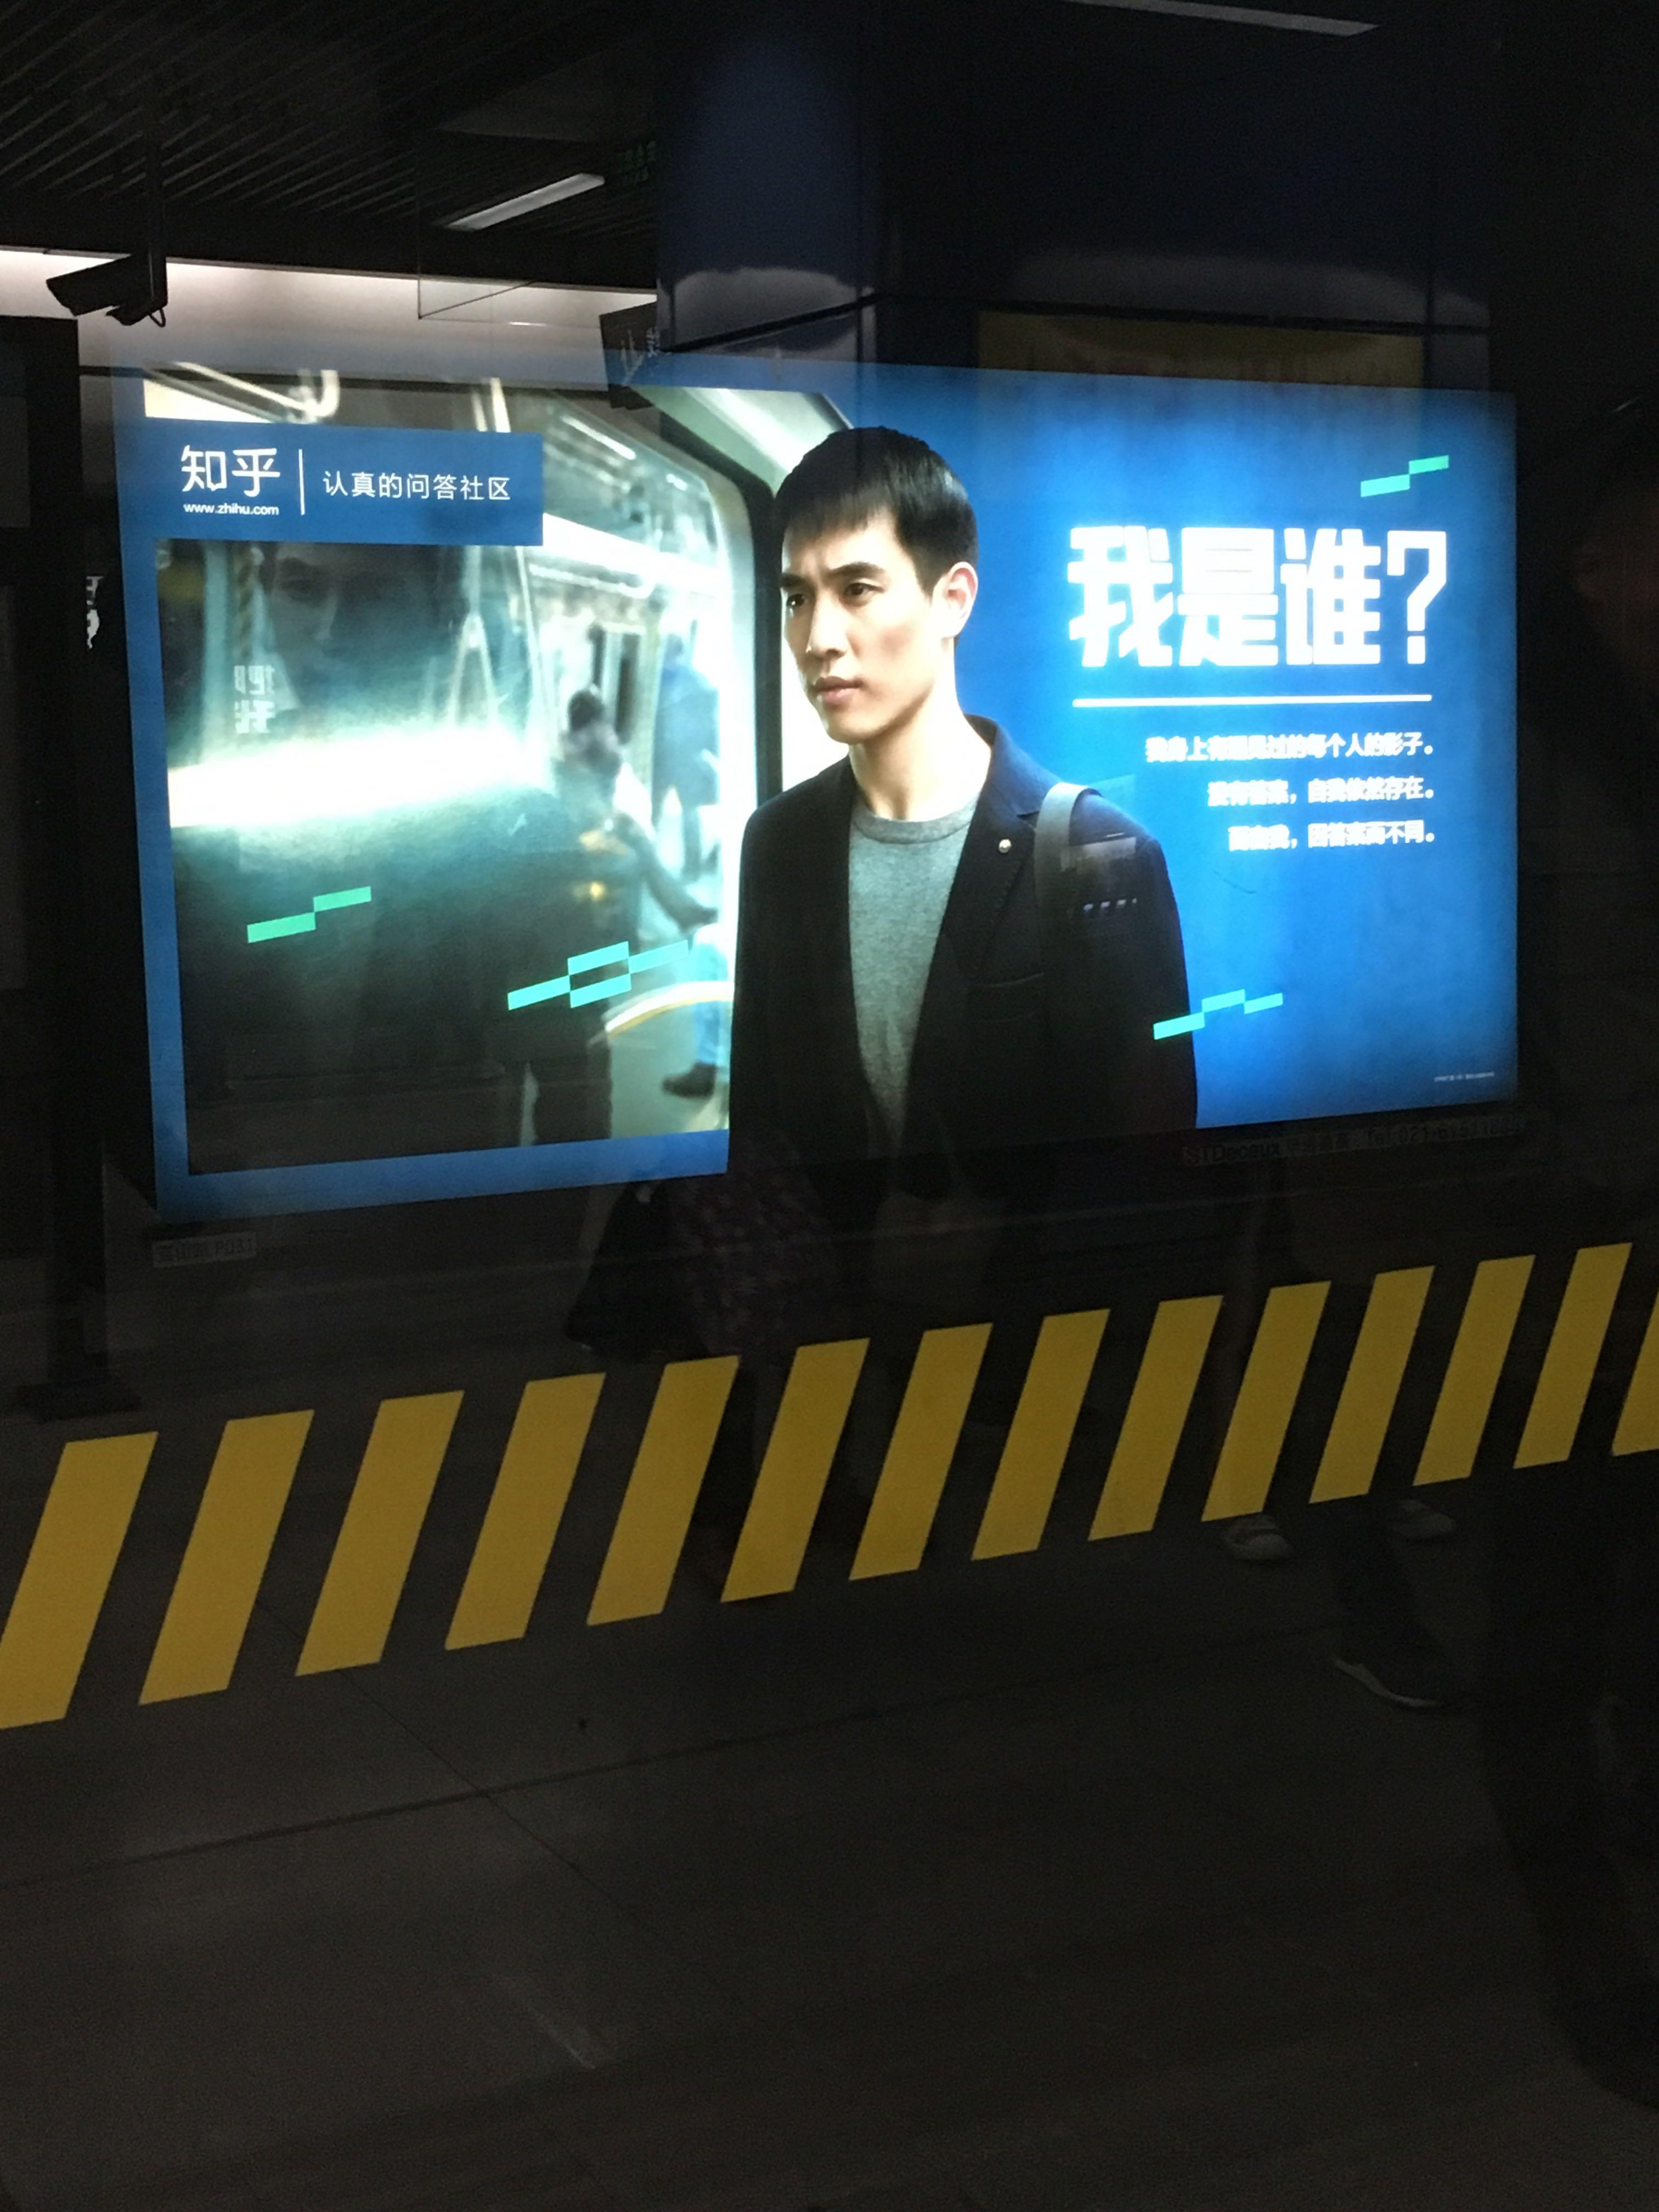 上海地铁上的知乎广告上的人都有什么故事?